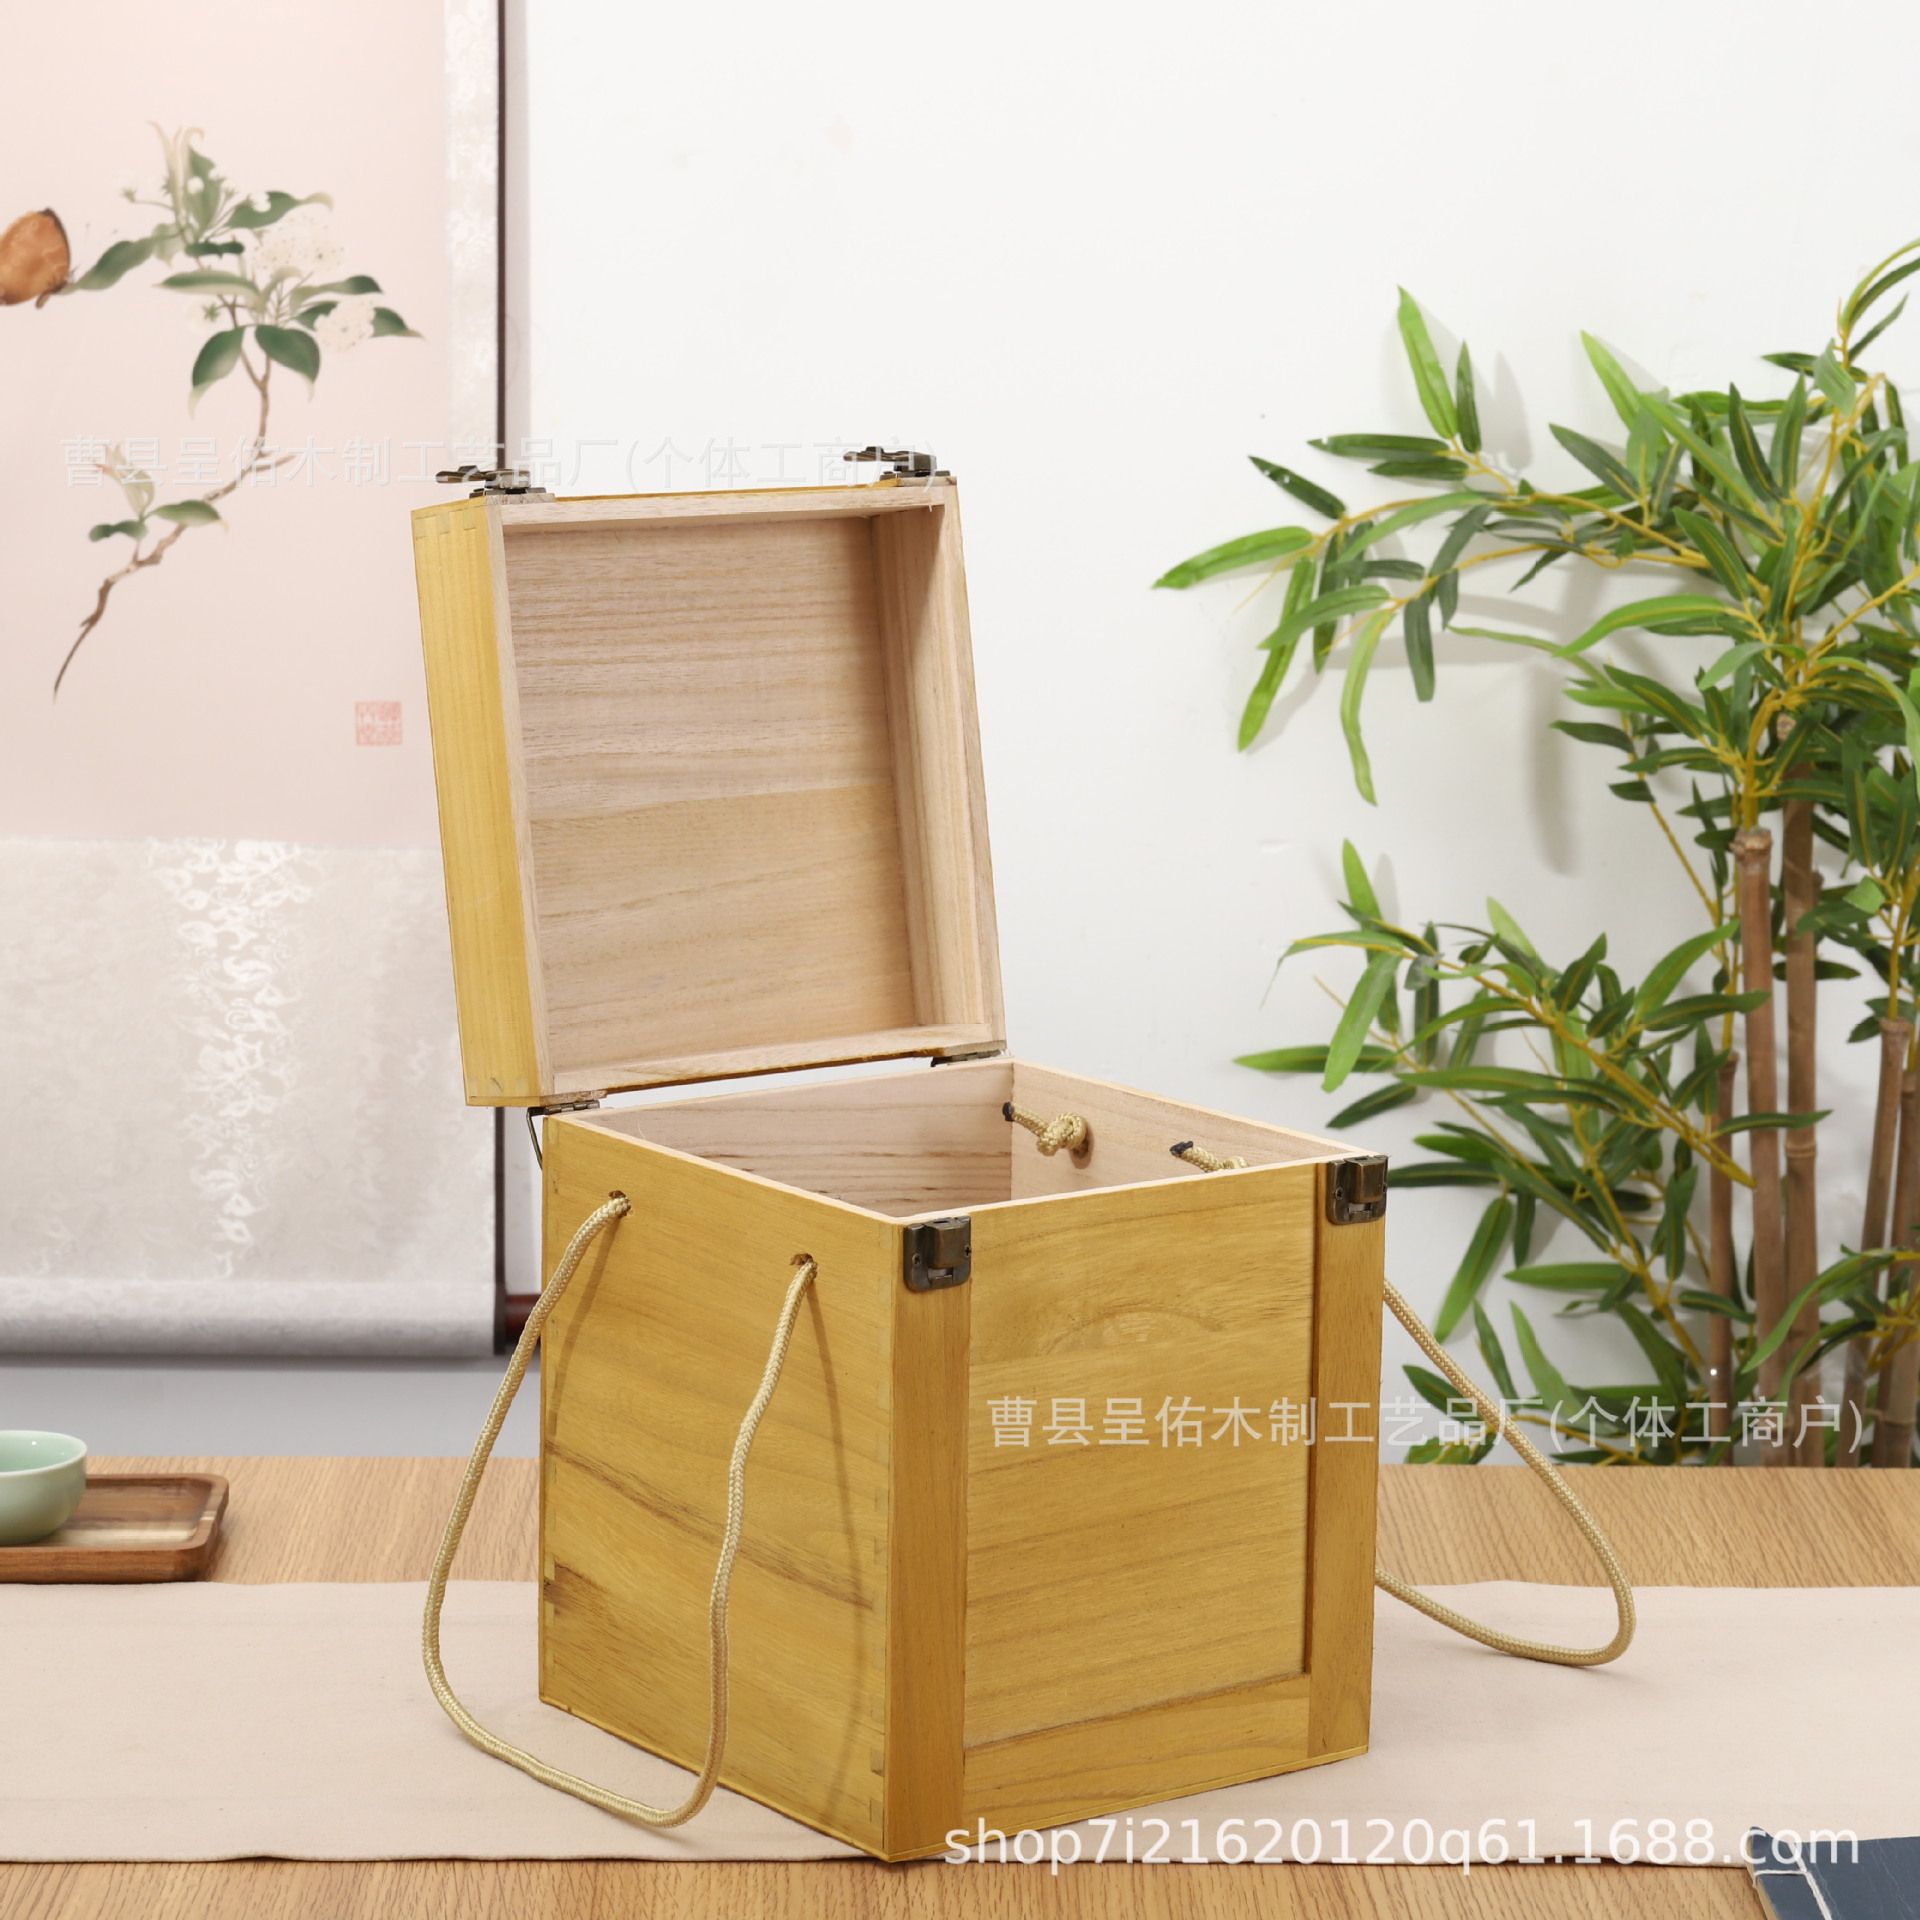 竹制酒盒包装双耳绳方形礼盒小木箱翻盖锁扣式木质酒坛收纳送礼箱